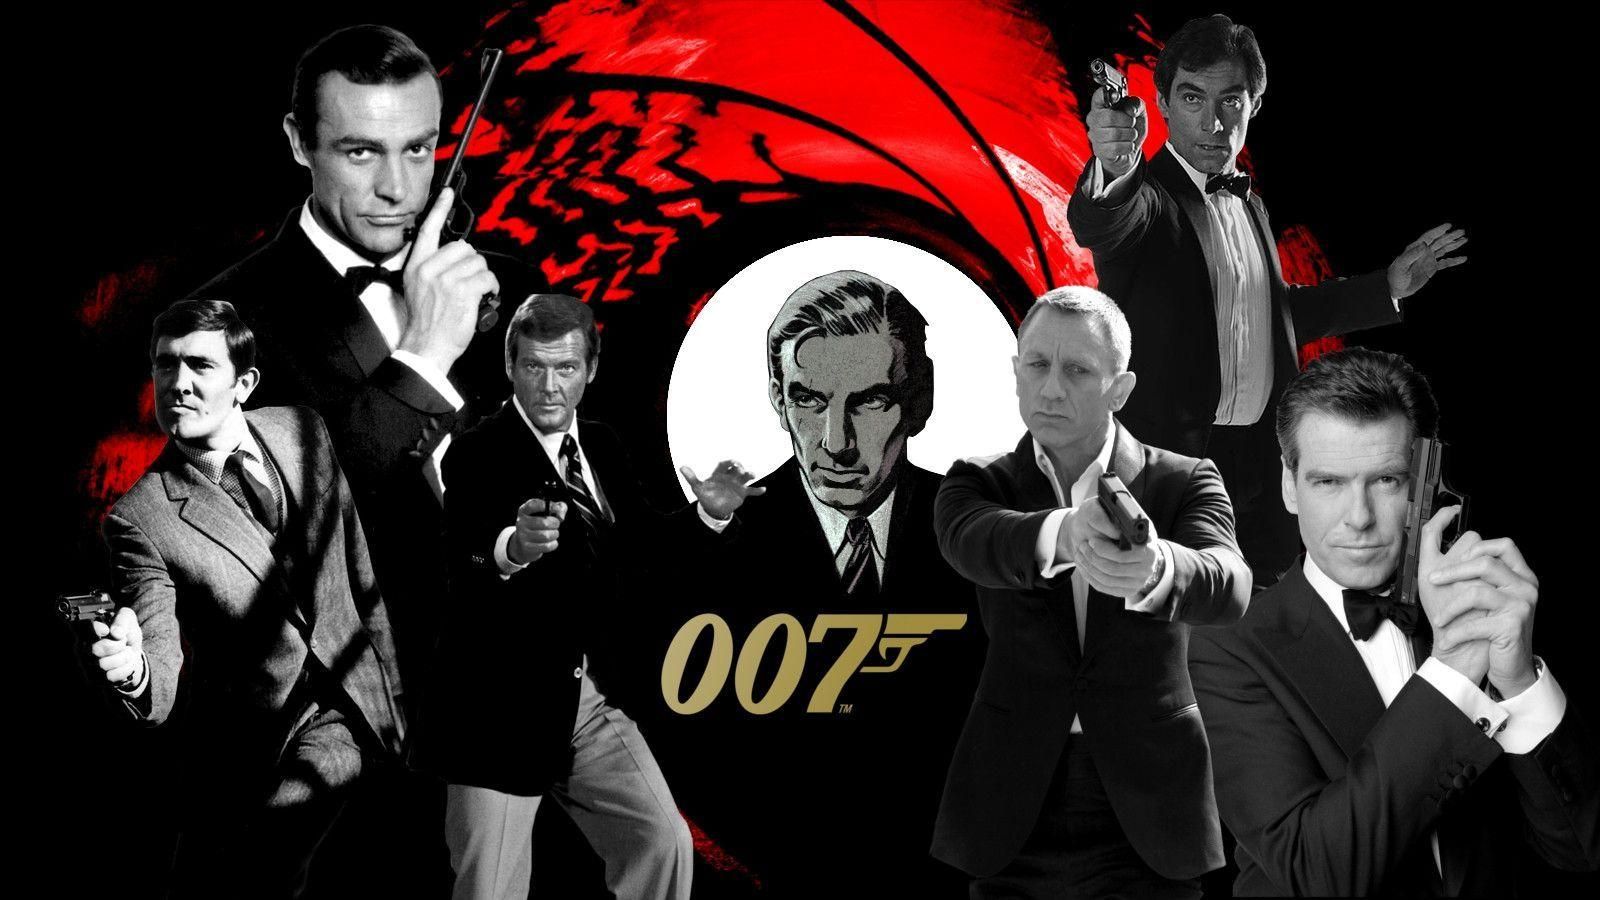 Anche i libri di James Bond soggetti alla censura di termini razzisti e sessisti